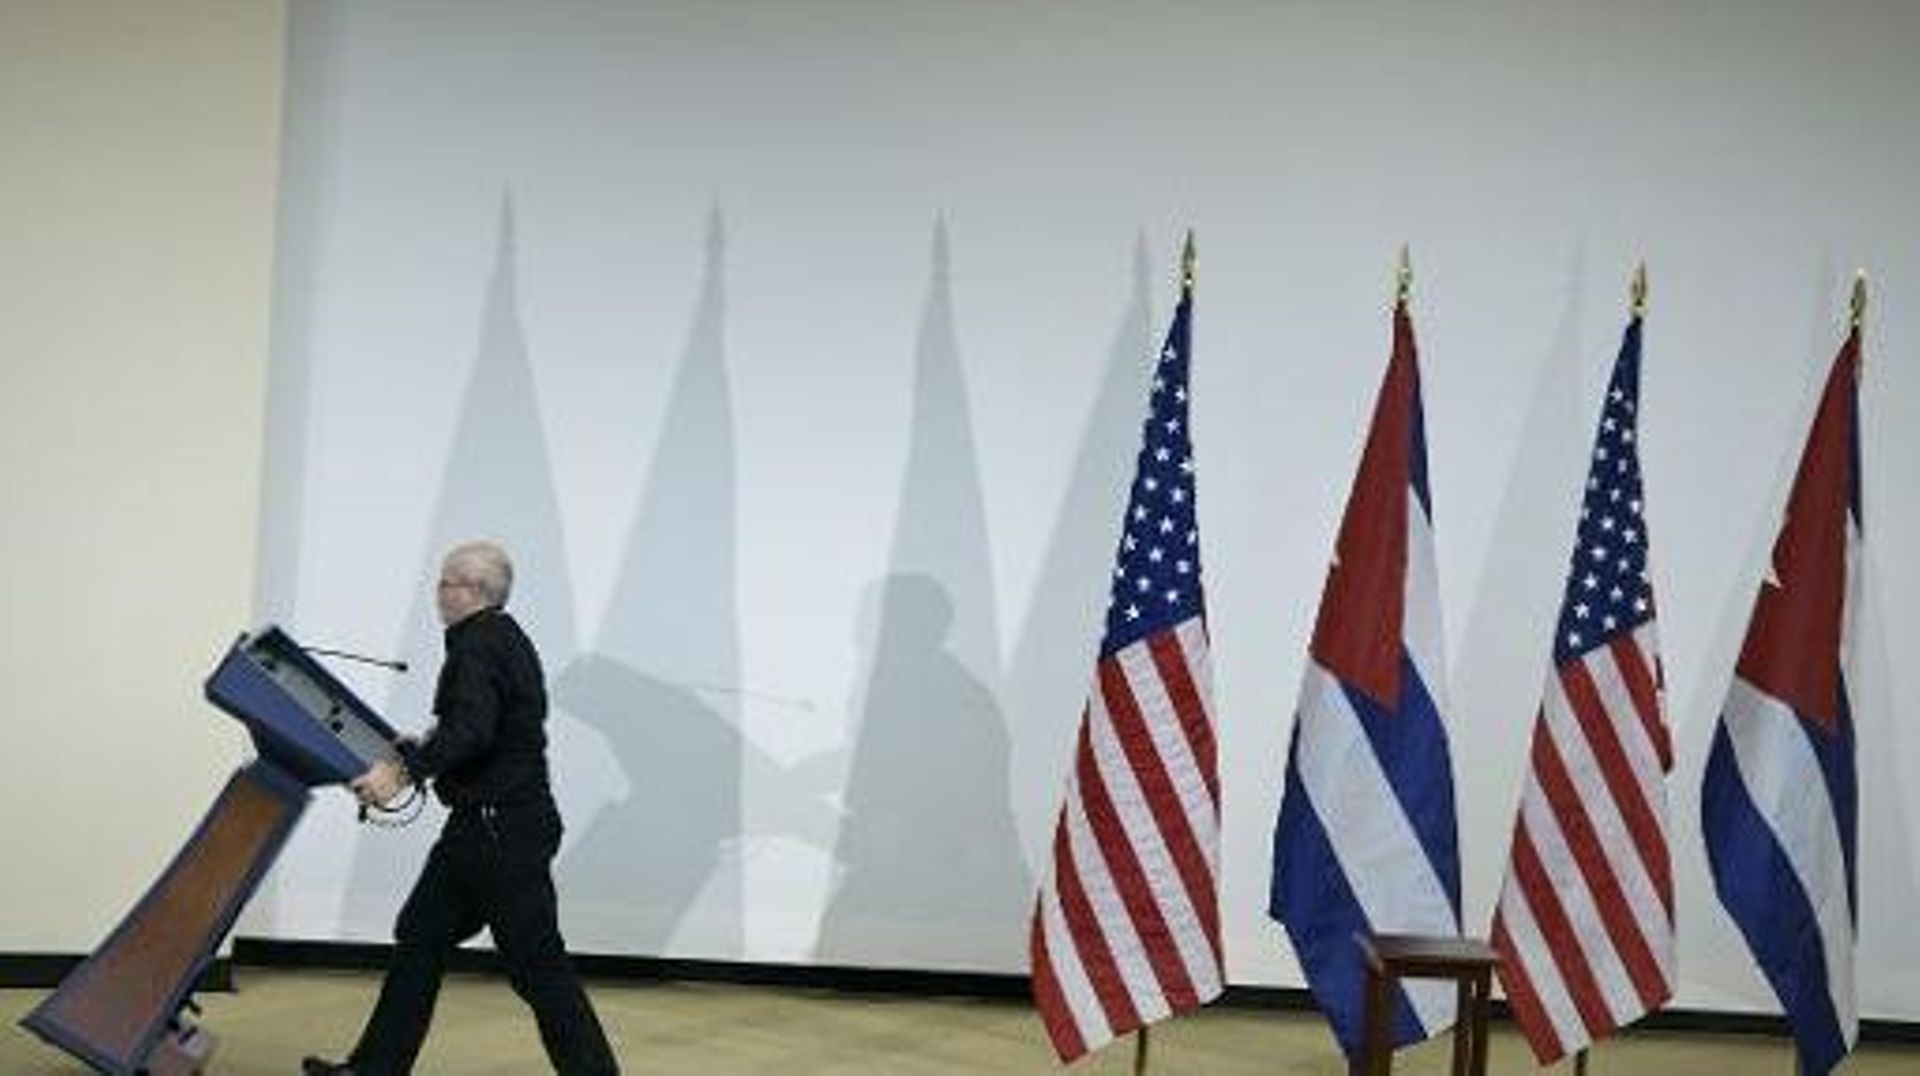 La tribune après une conférence de presse entre des représentants cubains et américains, à Washington, le 27 février 2015